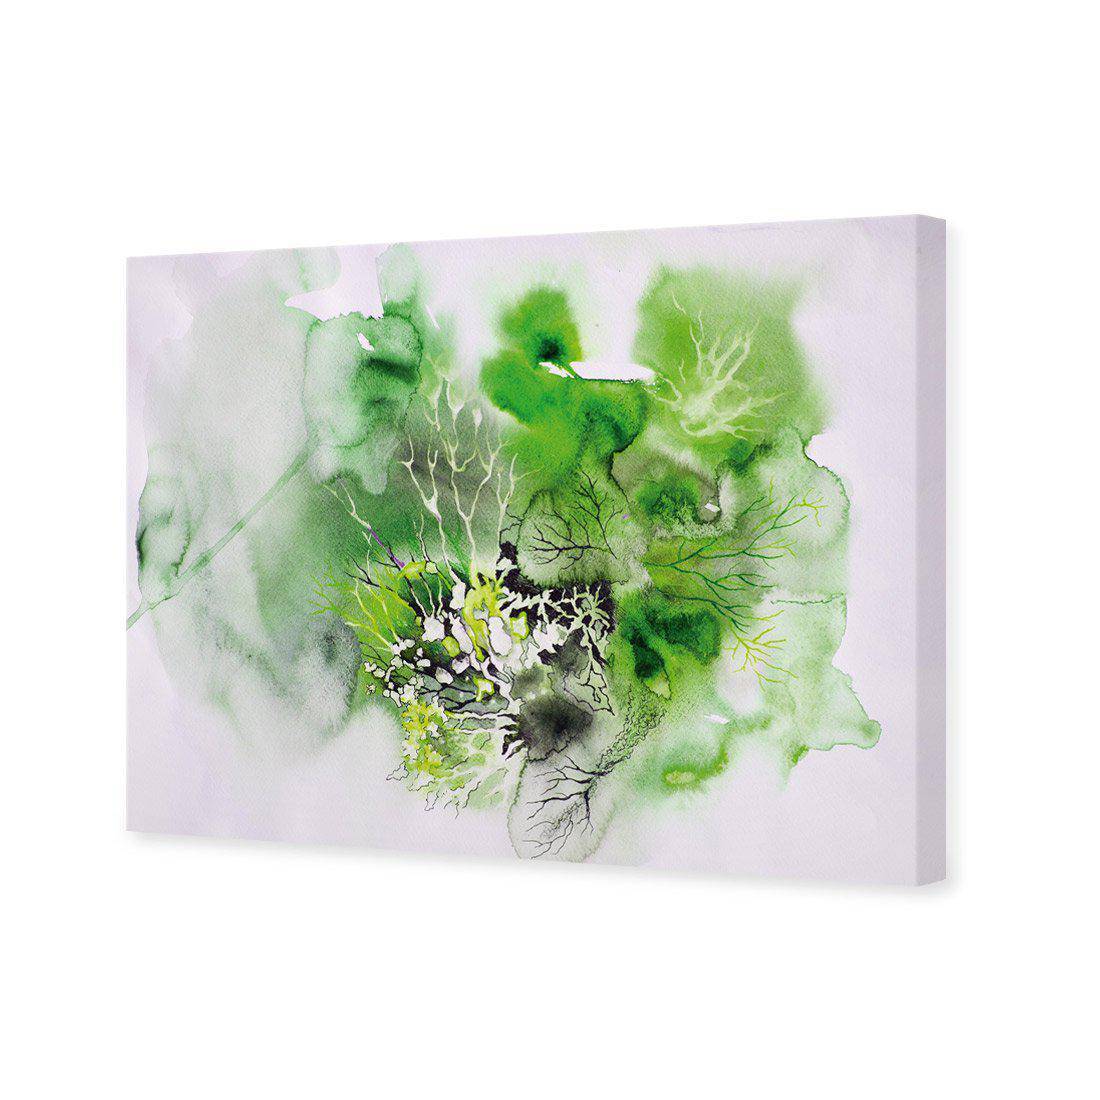 Veins Of Life Green Canvas Art-Canvas-Wall Art Designs-45x30cm-Canvas - No Frame-Wall Art Designs